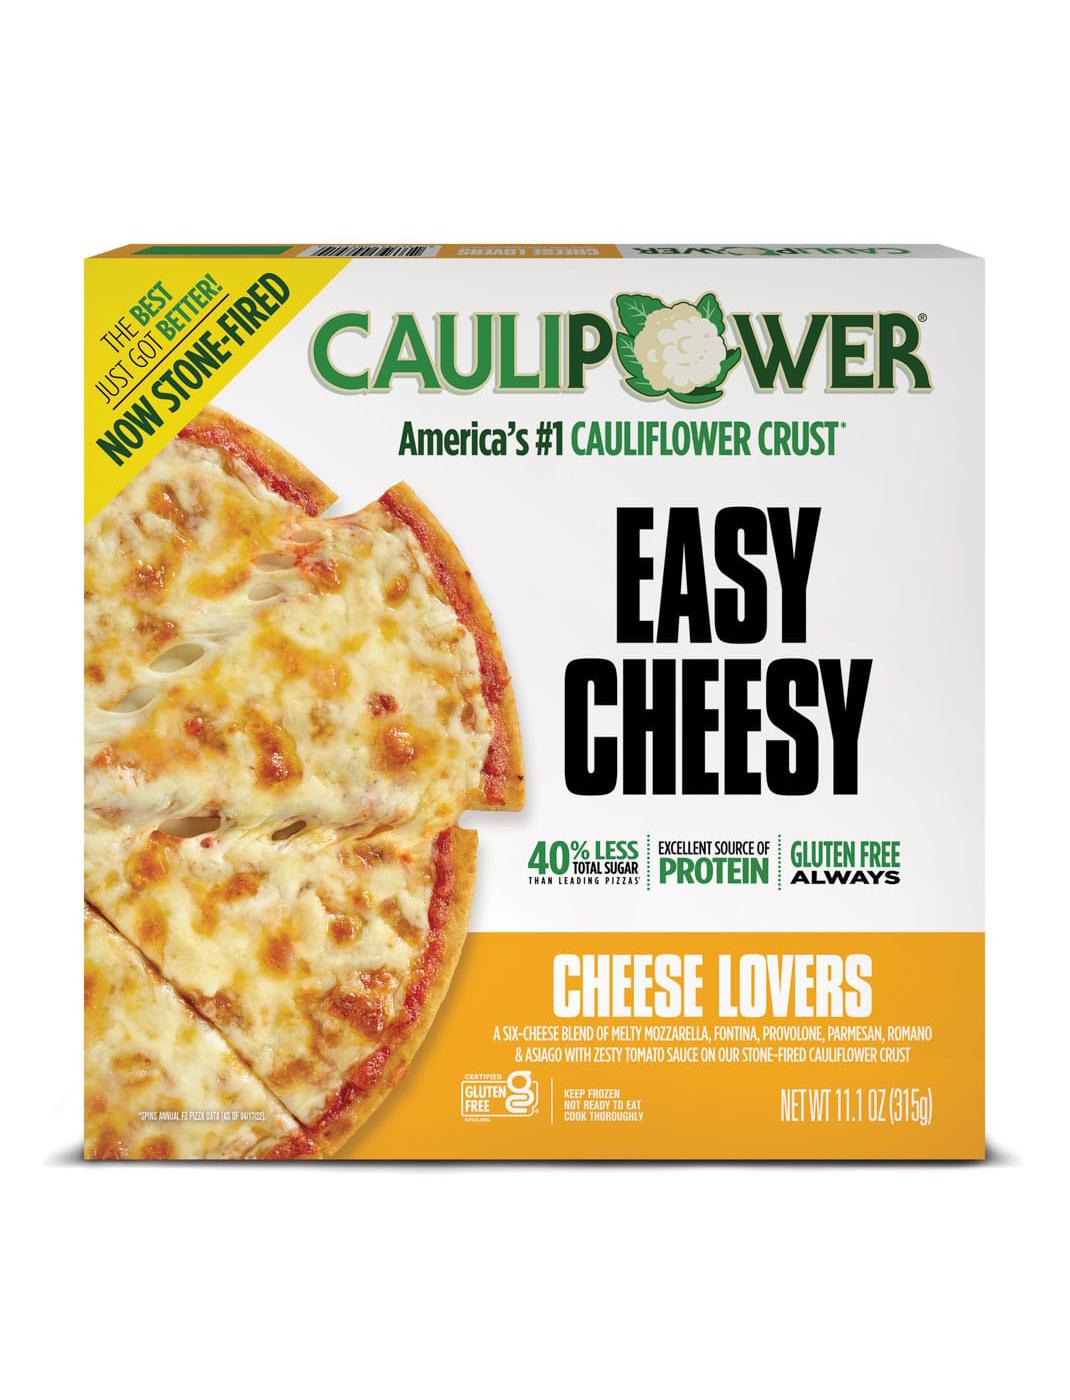 Caulipower Cheese Lovers Cauliflower Pizza; image 1 of 2